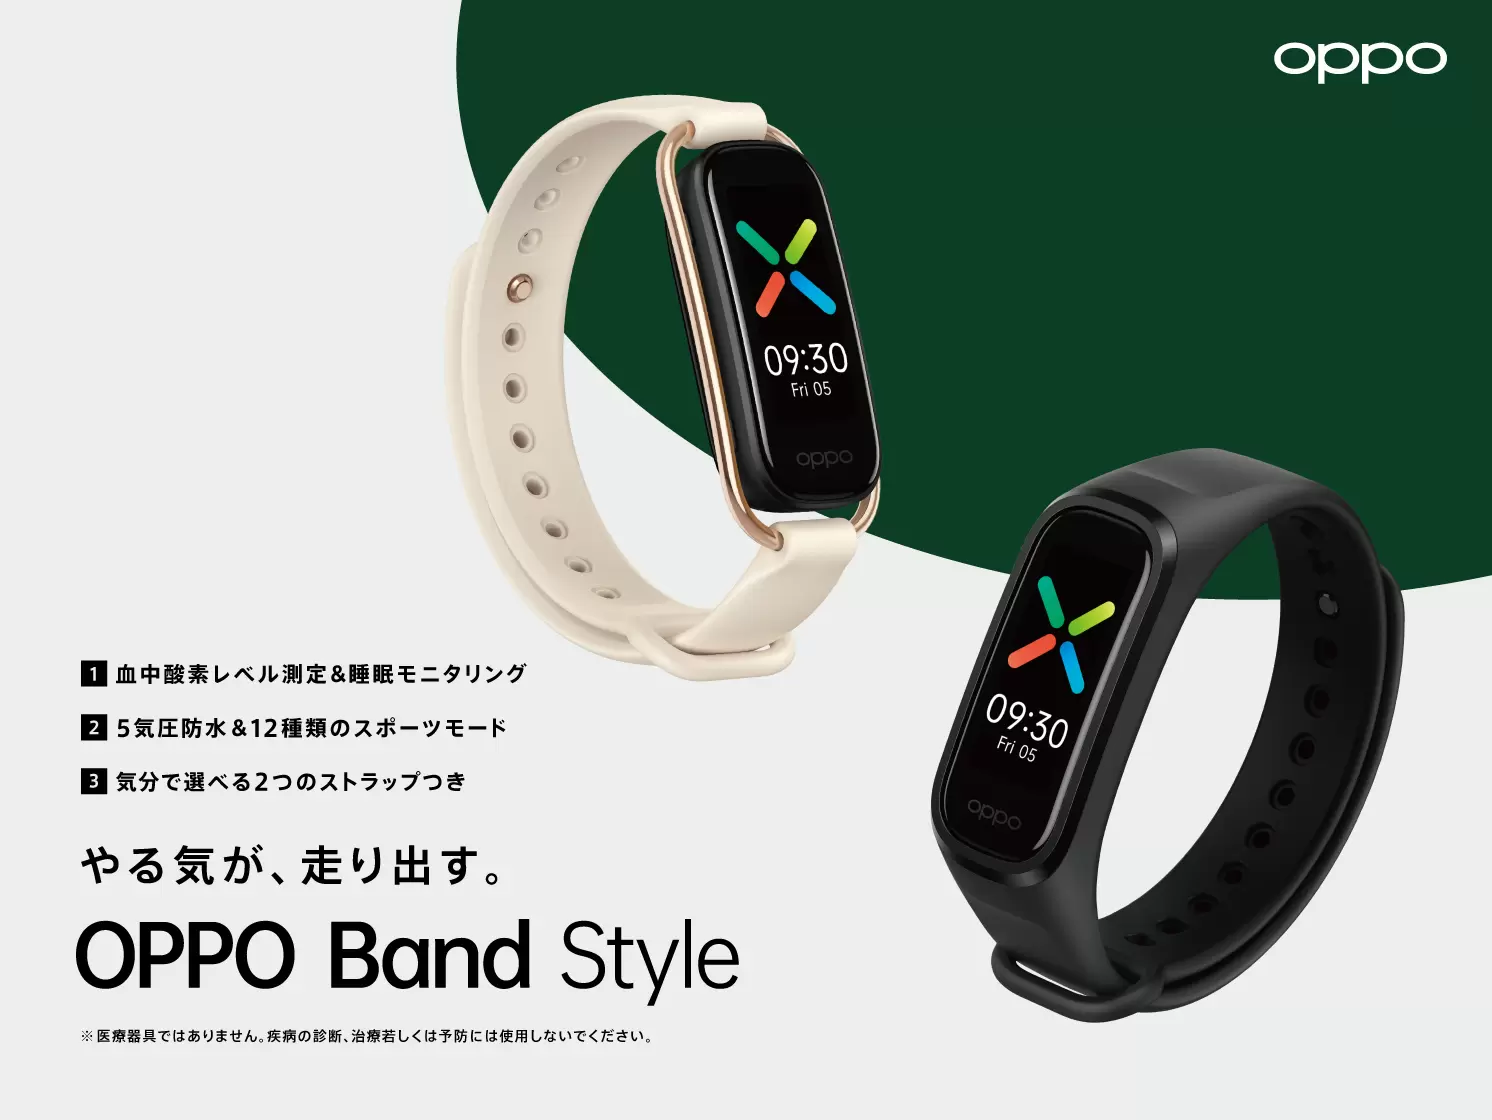 OPPO国内初のスマートバンド製品 血中酸素レベル測定機能を搭載した「OPPO Band Style」を発表  オウガ・ジャパン